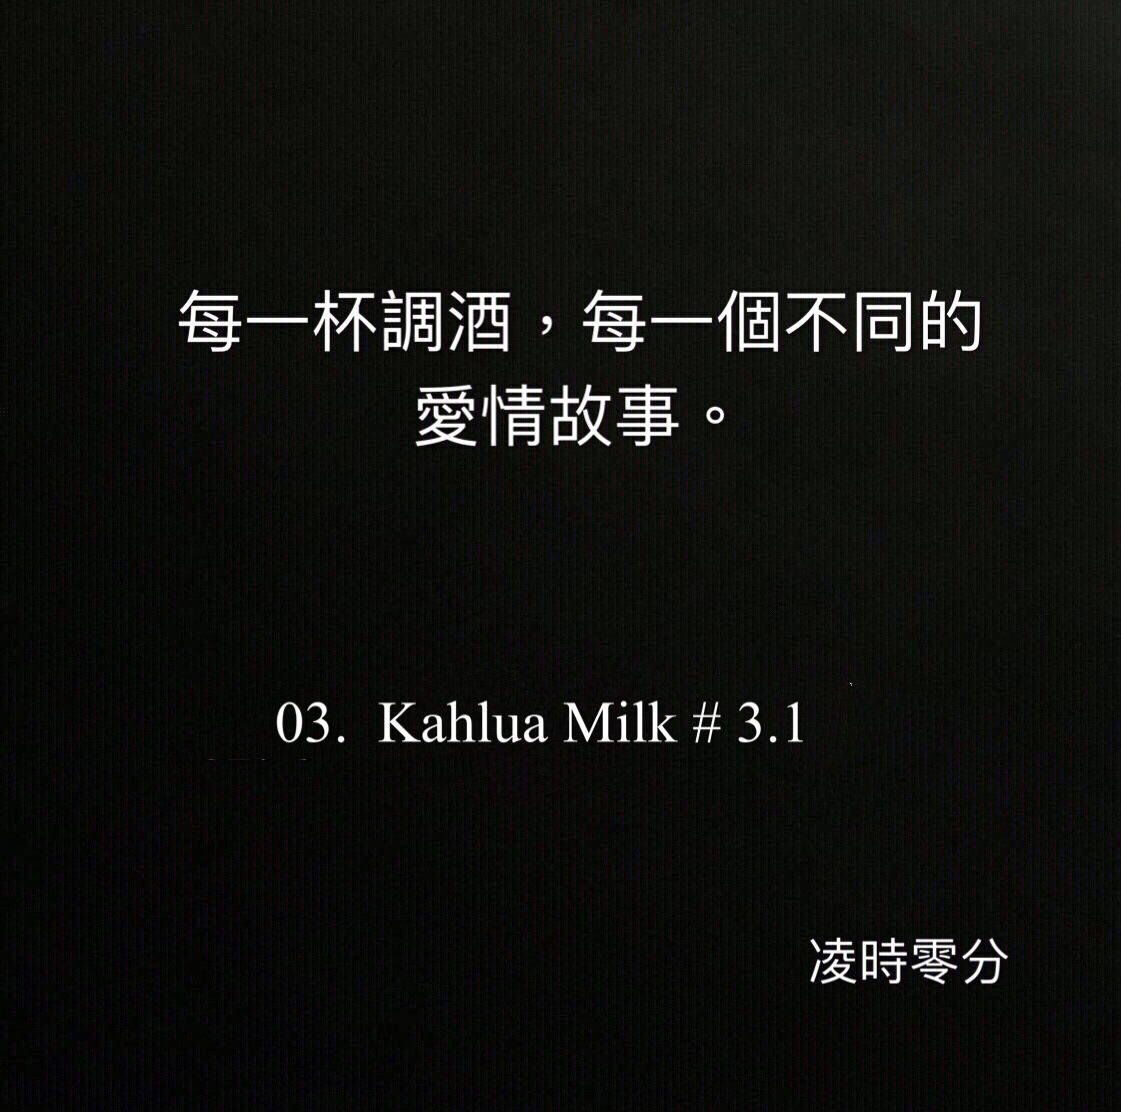 （短篇故事）每一杯調酒，每一個不同的愛情故事。 03. Kahlua Milk # 3.1